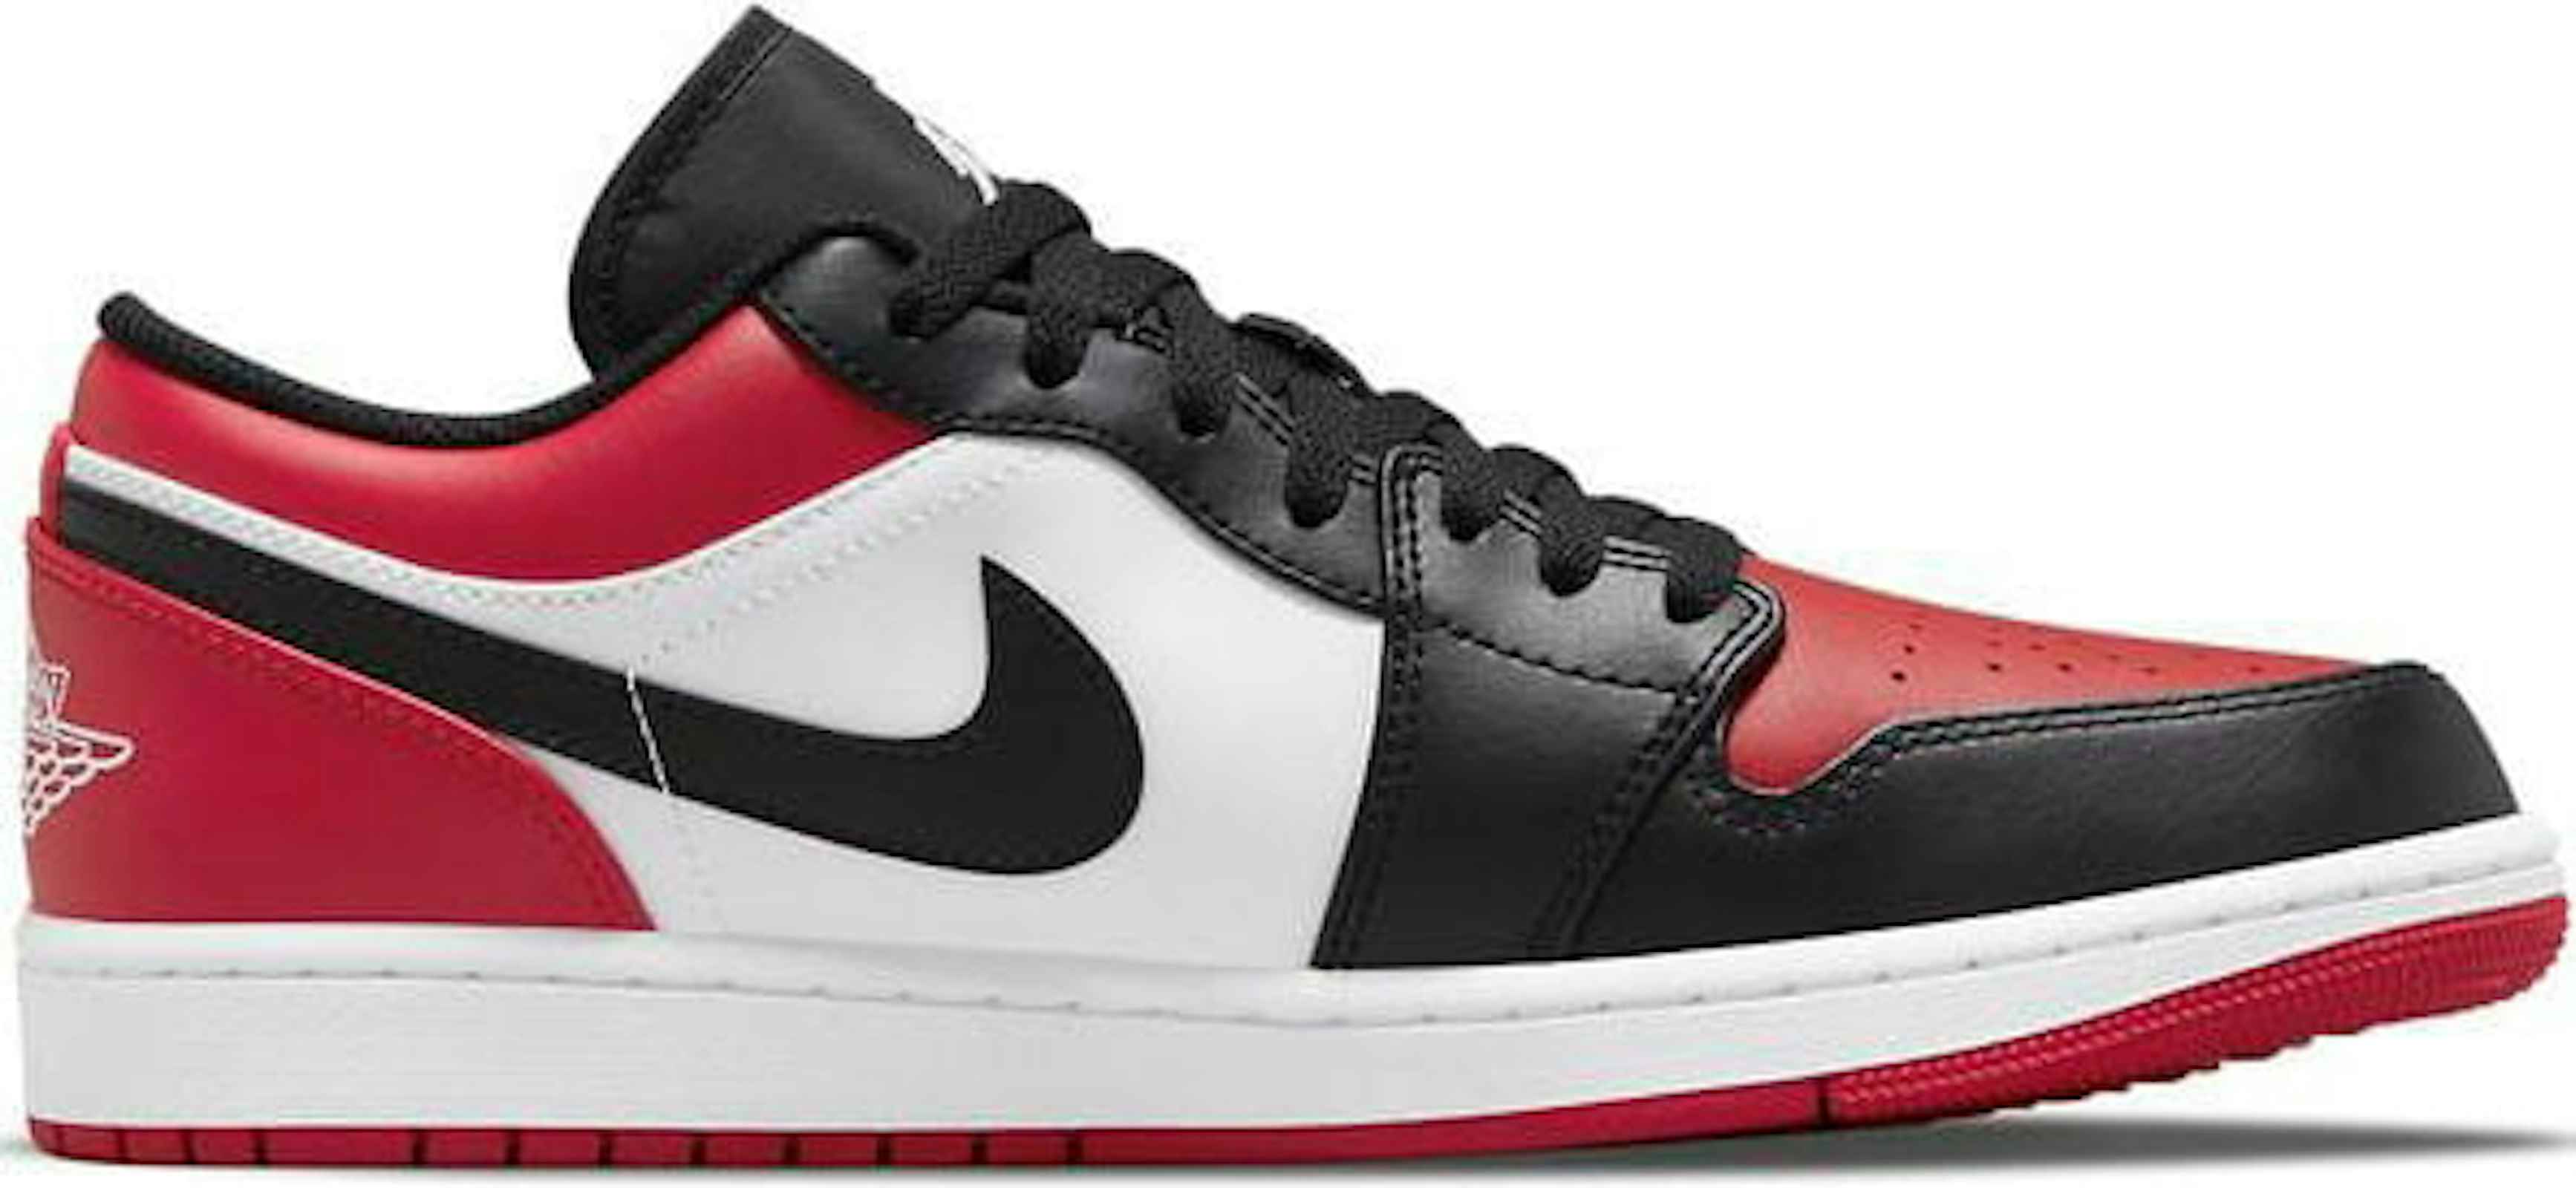 Air Jordan 1 Low "Bred Toe" 553558612 Sneaker Squad